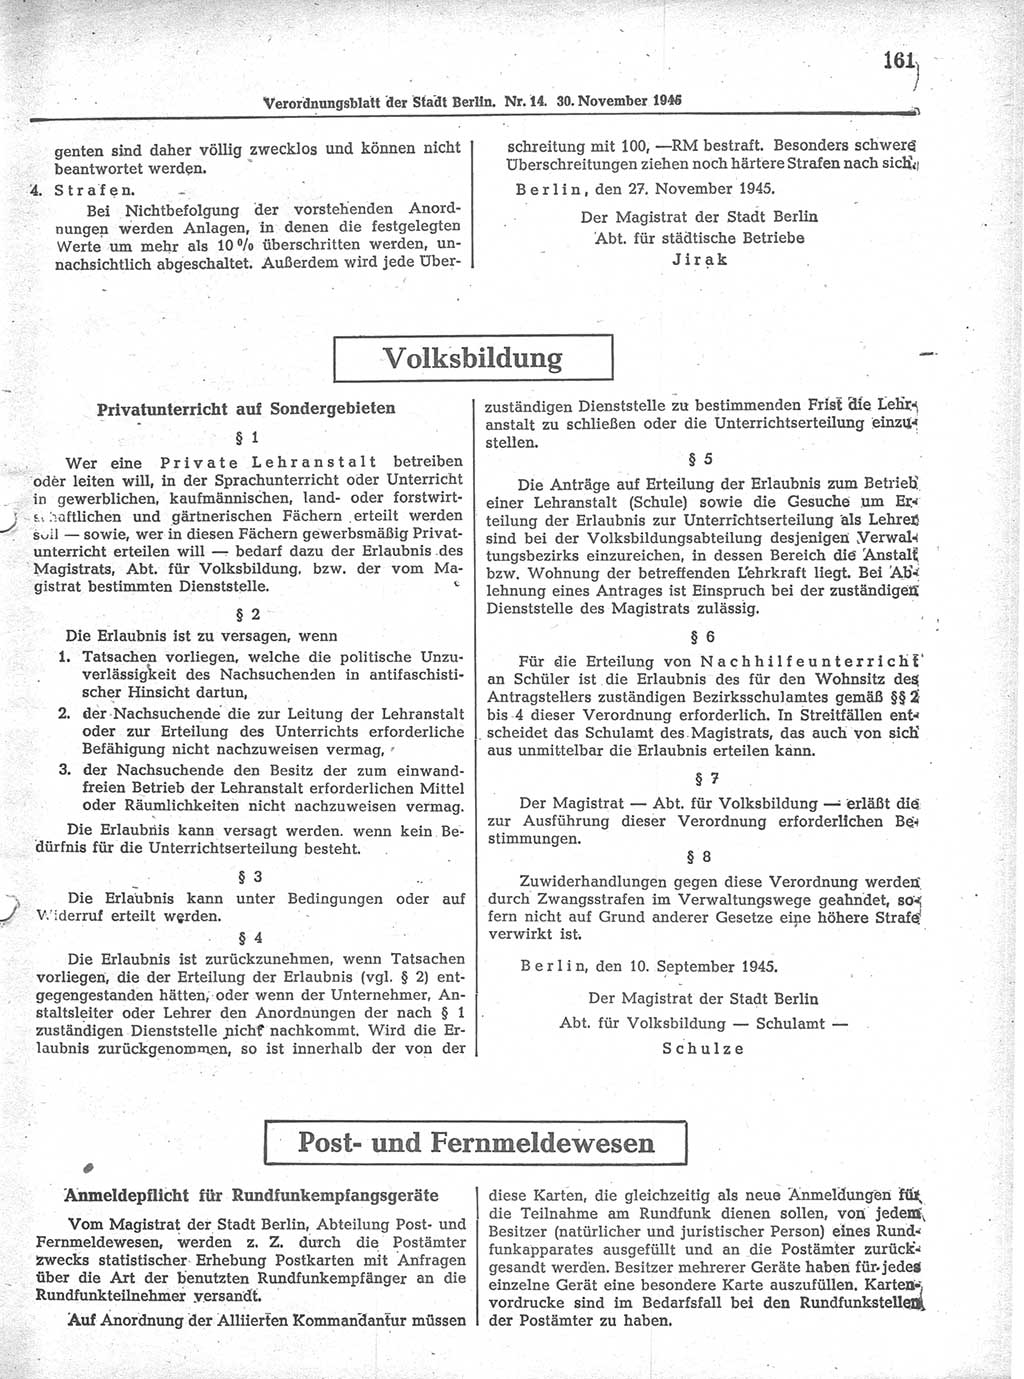 Verordnungsblatt (VOBl.) der Stadt Berlin 1945, Seite 161 (VOBl. Bln. 1945, S. 161)